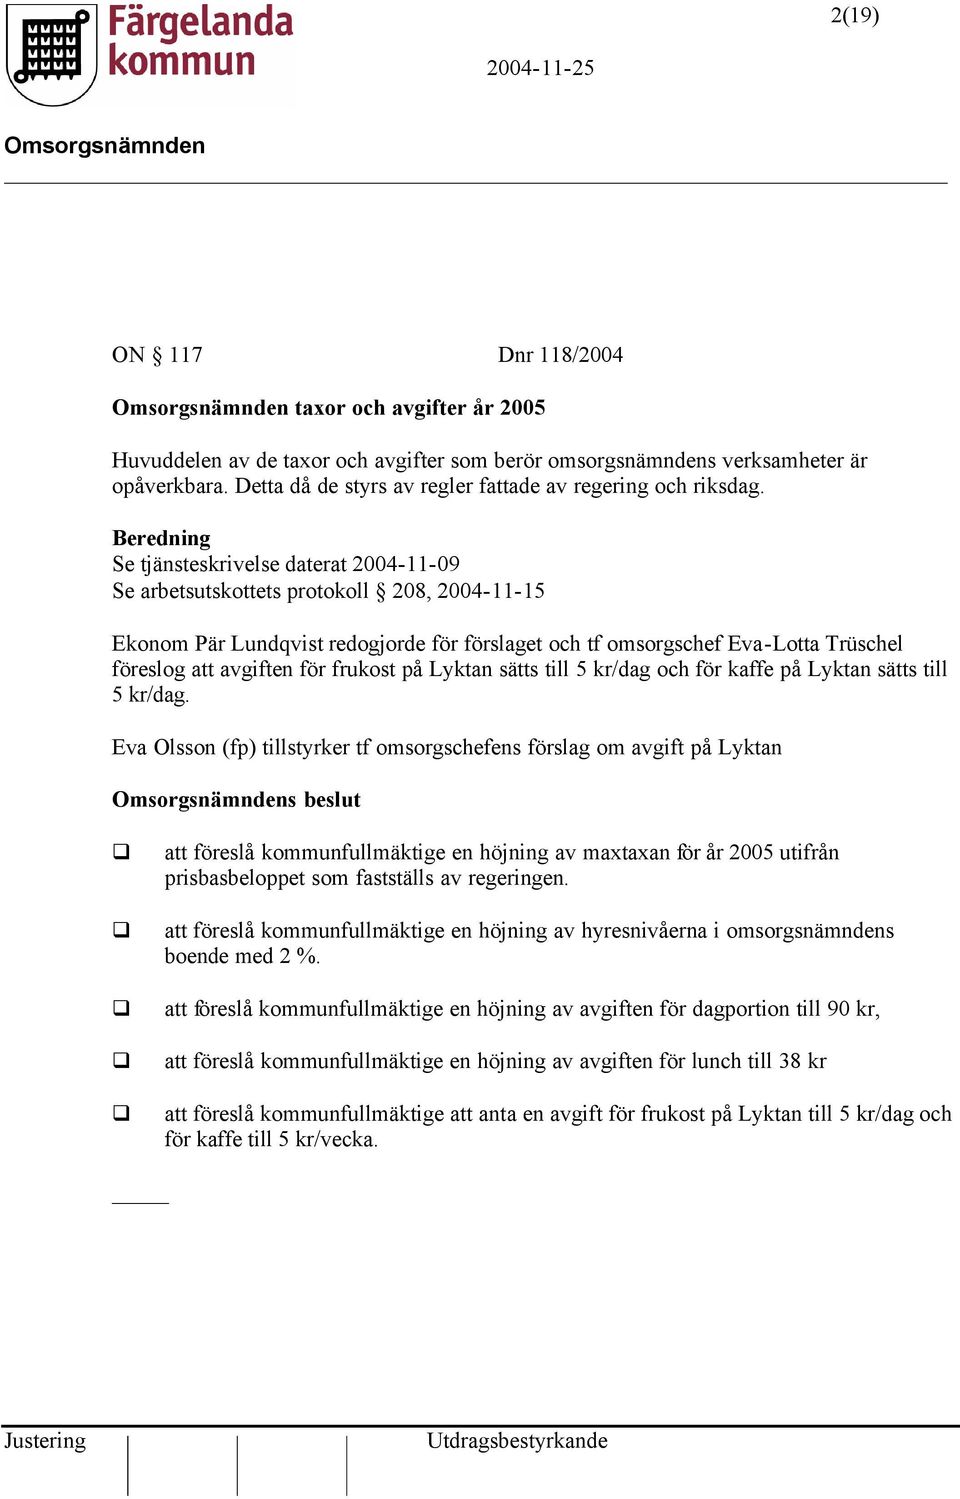 Beredning Se tjänsteskrivelse daterat 2004-11-09 Se arbetsutskottets protokoll 208, 2004-11-15 Ekonom Pär Lundqvist redogjorde för förslaget och tf omsorgschef Eva-Lotta Trüschel föreslog att